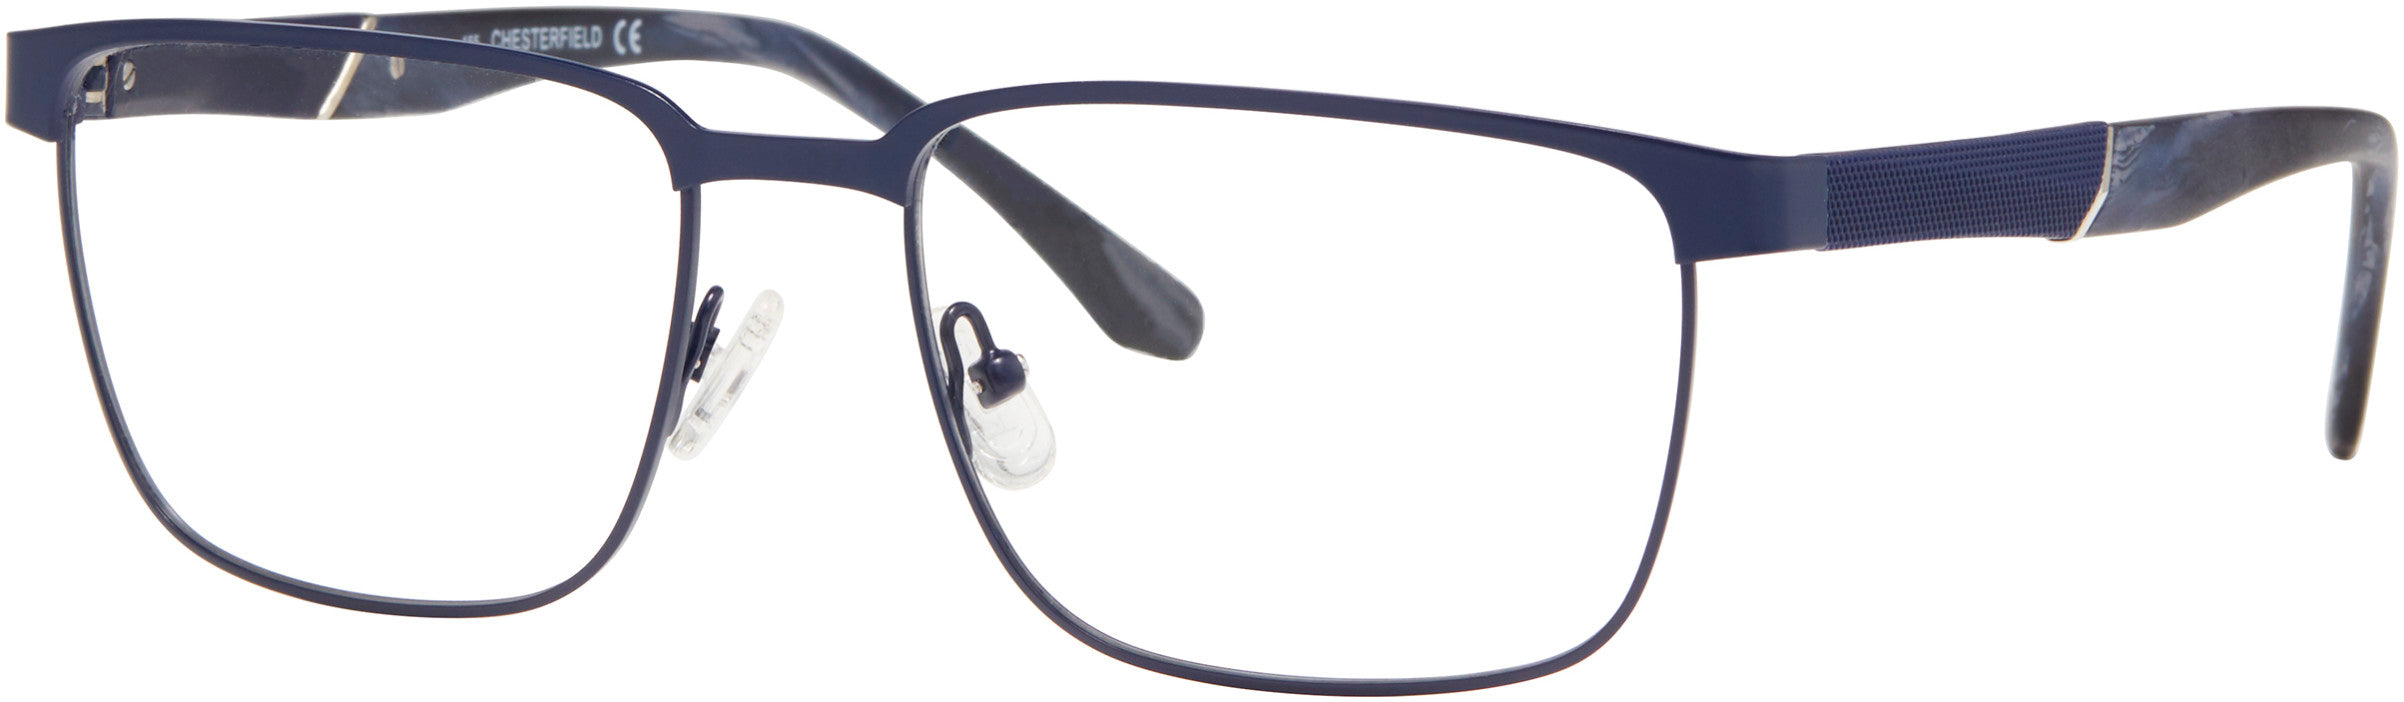  Chesterfield 82XL Rectangular Eyeglasses 0H2T-0H2T  Blue Ruthenium (00 Demo Lens)